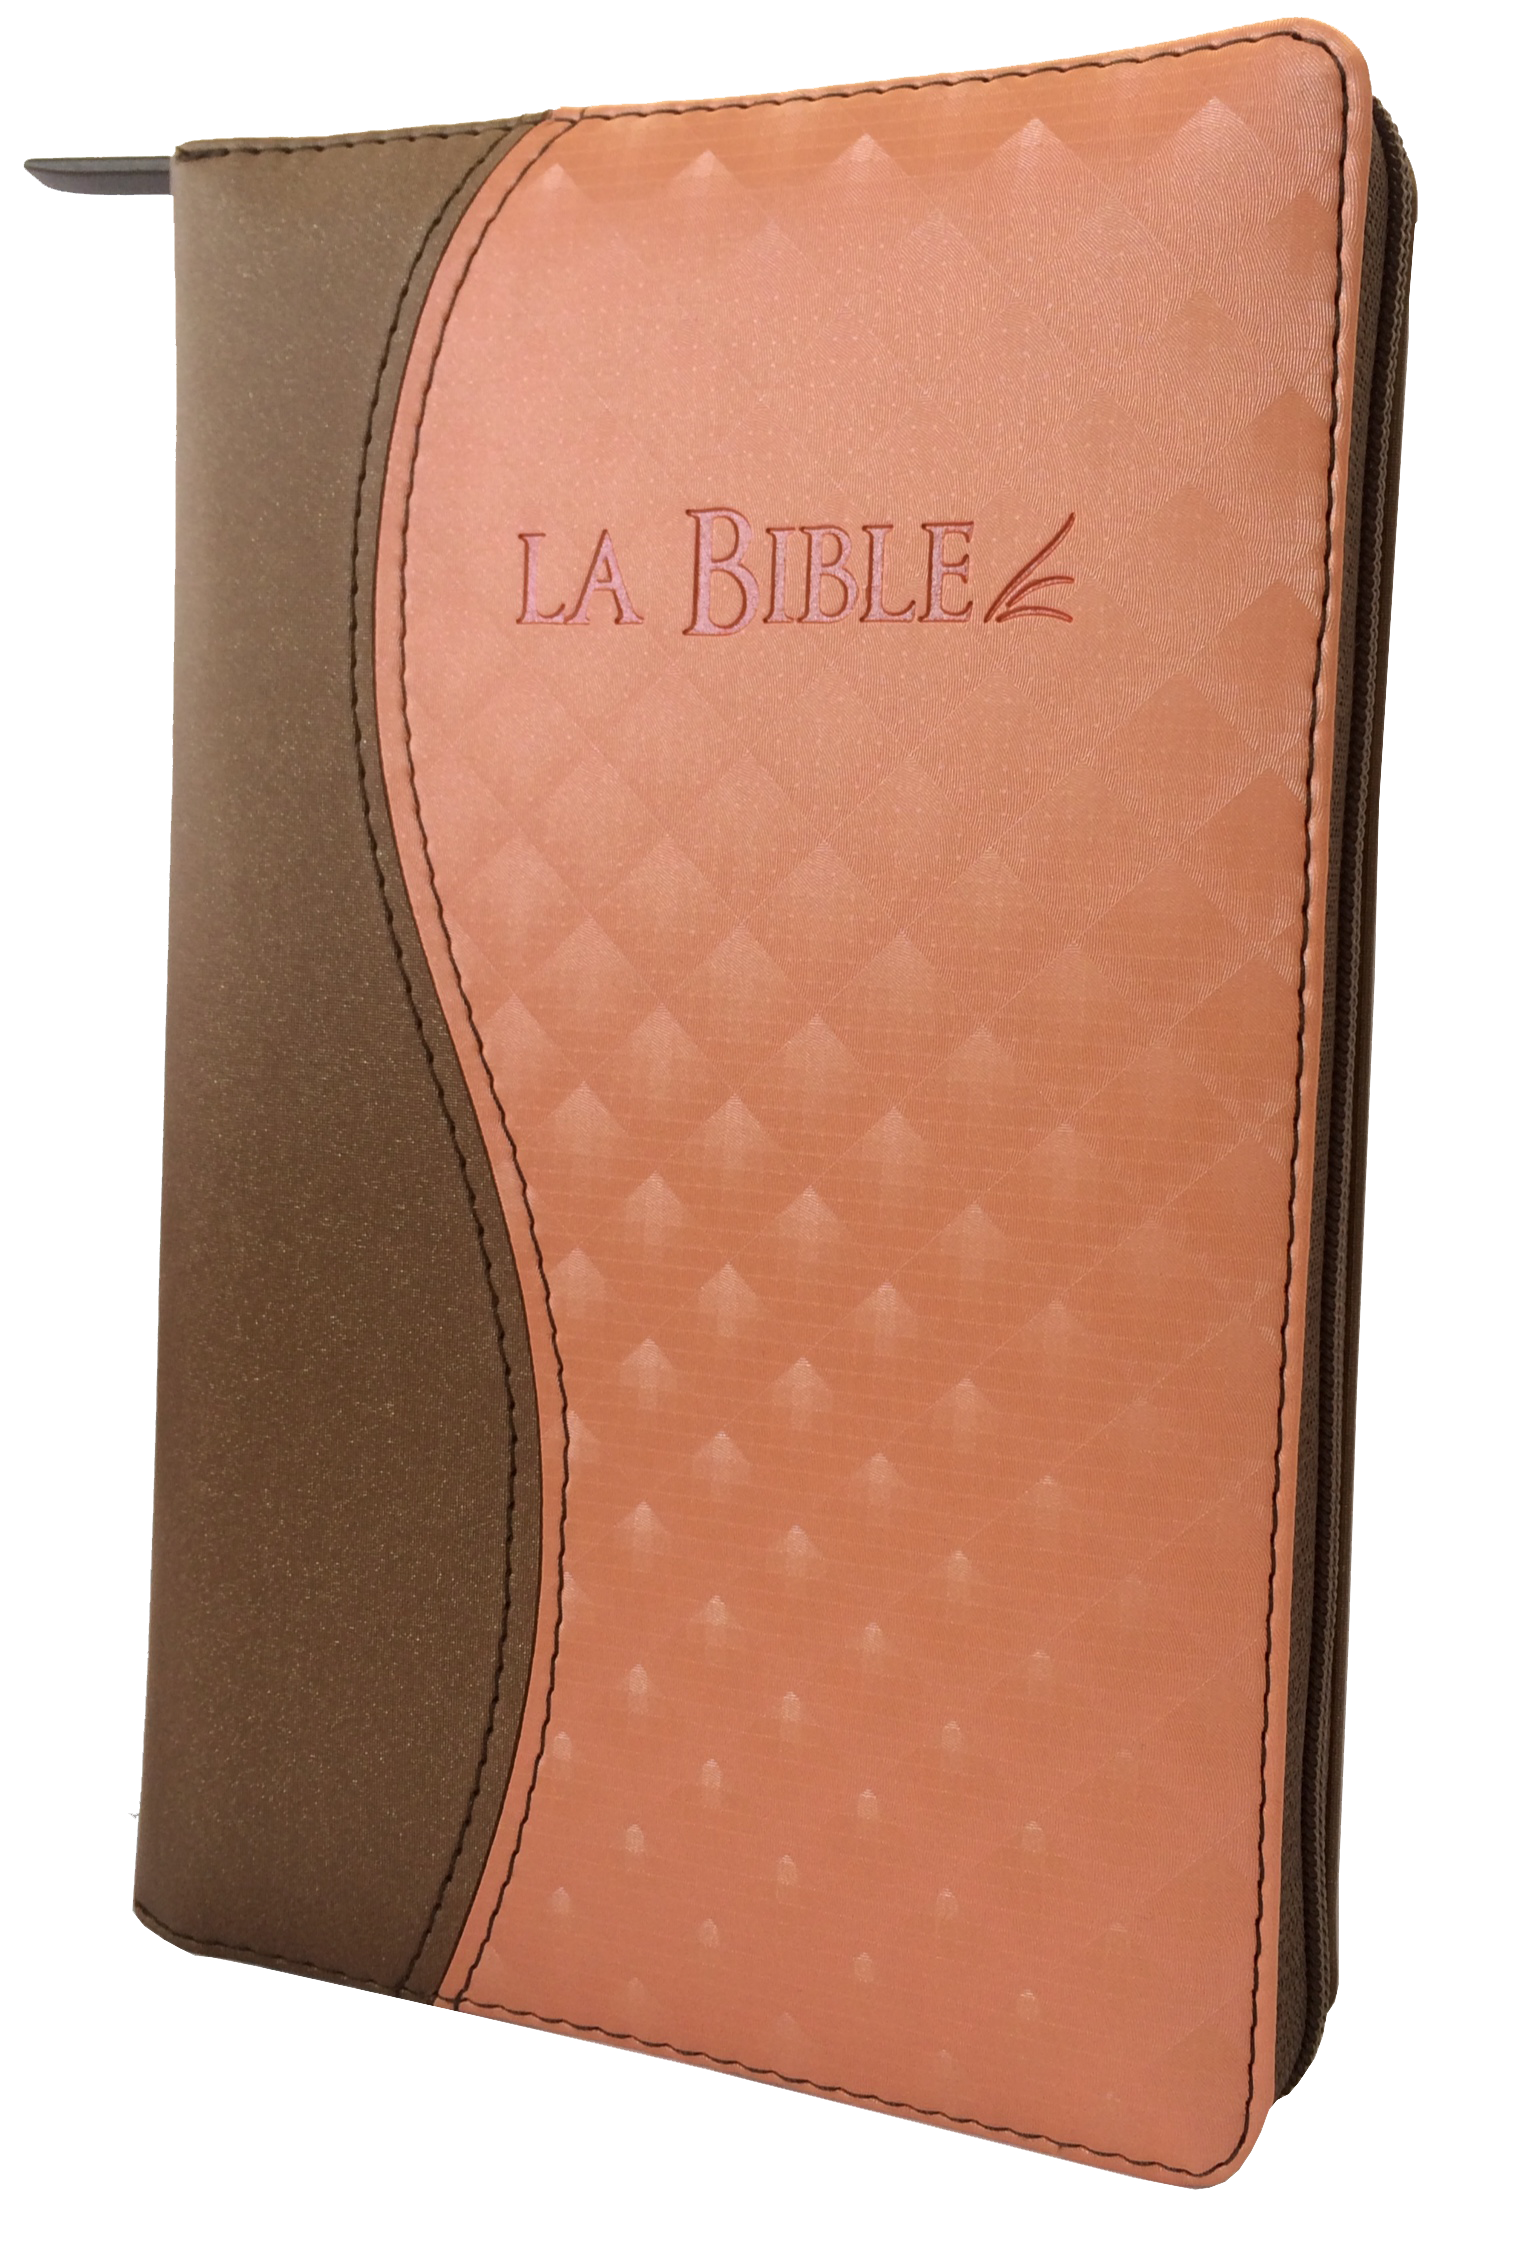 Bible Segond 21 compacte, duo brun saumon - couverture souple, vivella, avec zipper et tranches or